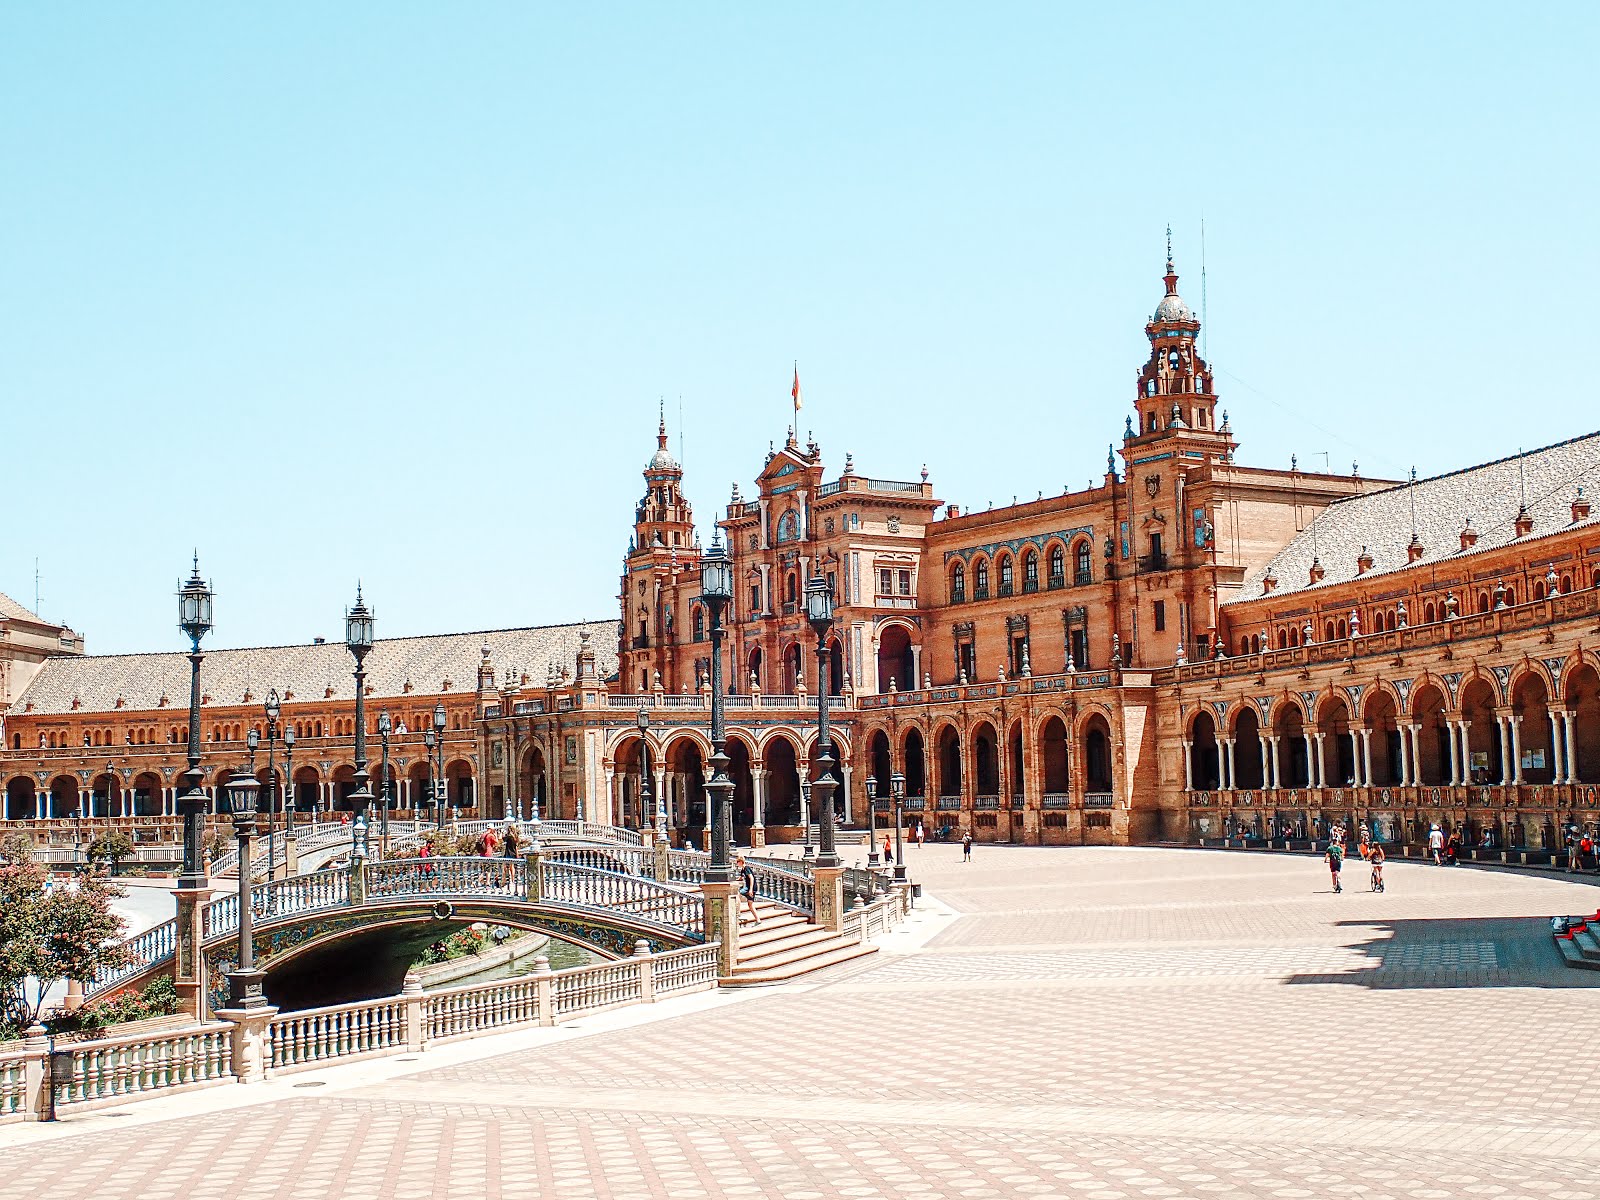 une partie de la plaza de espana de séville avec le monument central et les ponts en azulejos